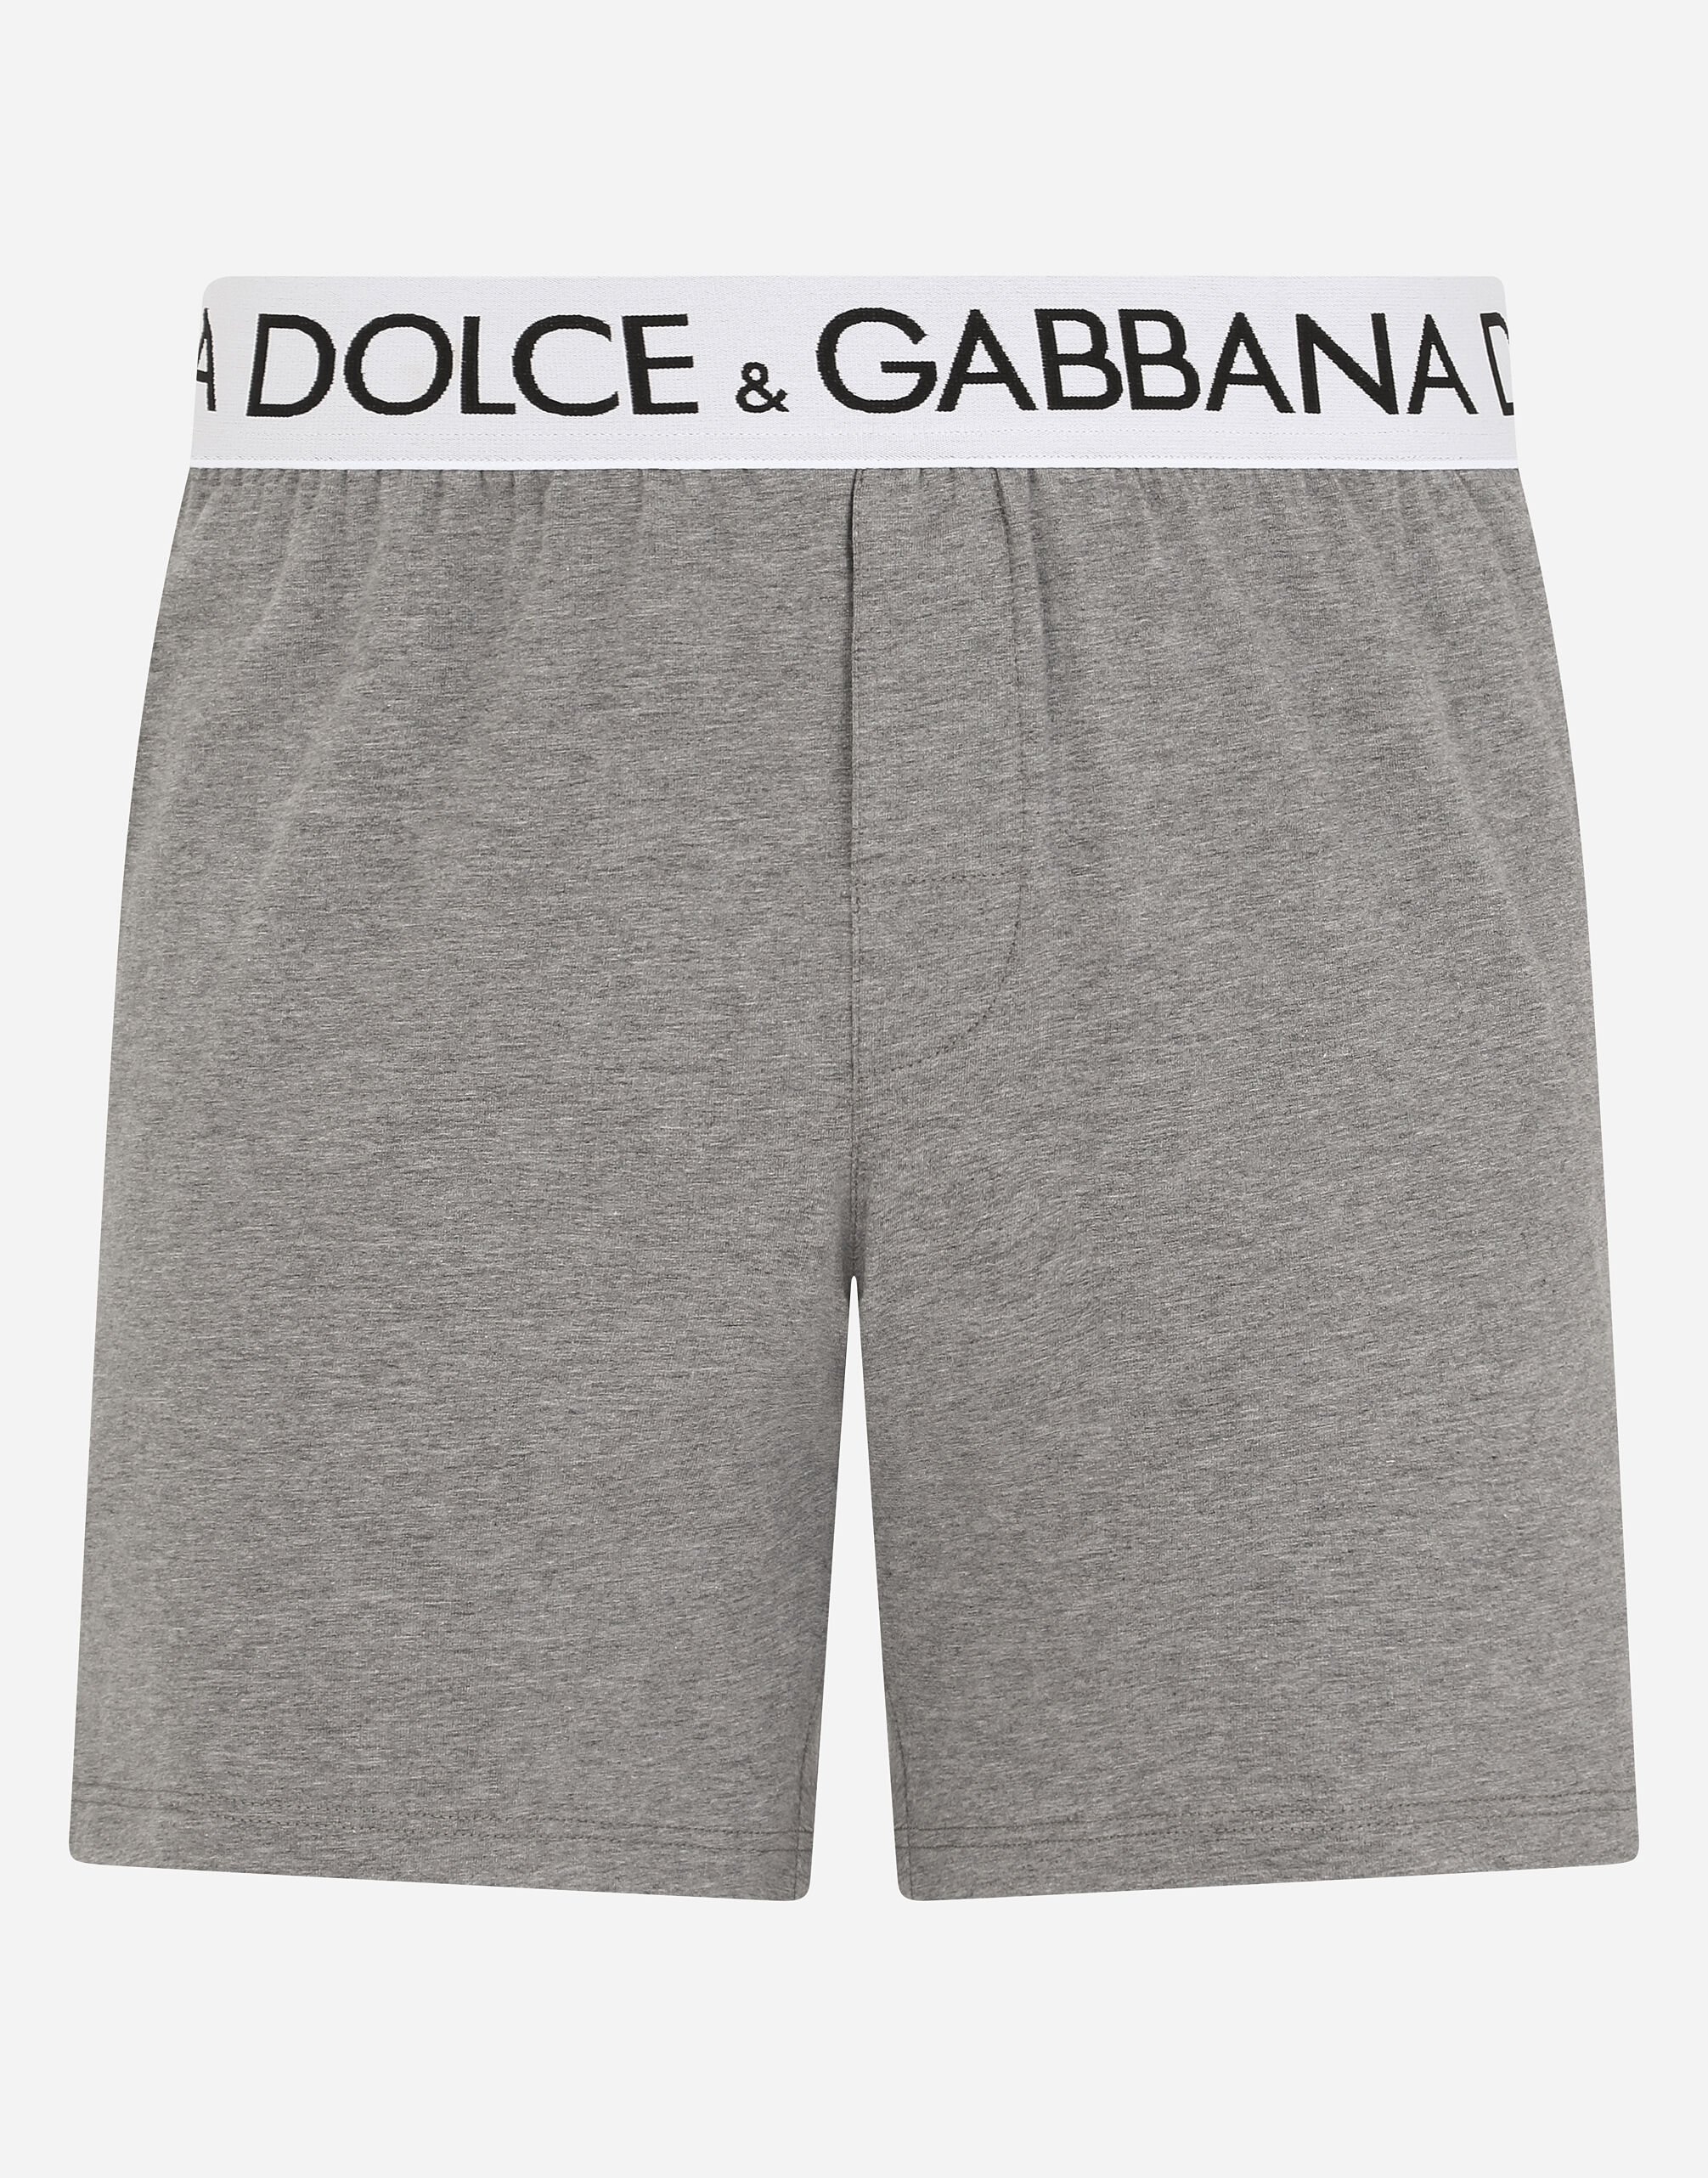 Dolce & Gabbana Two-way stretch cotton boxer shorts Black M3D70JFUEB0